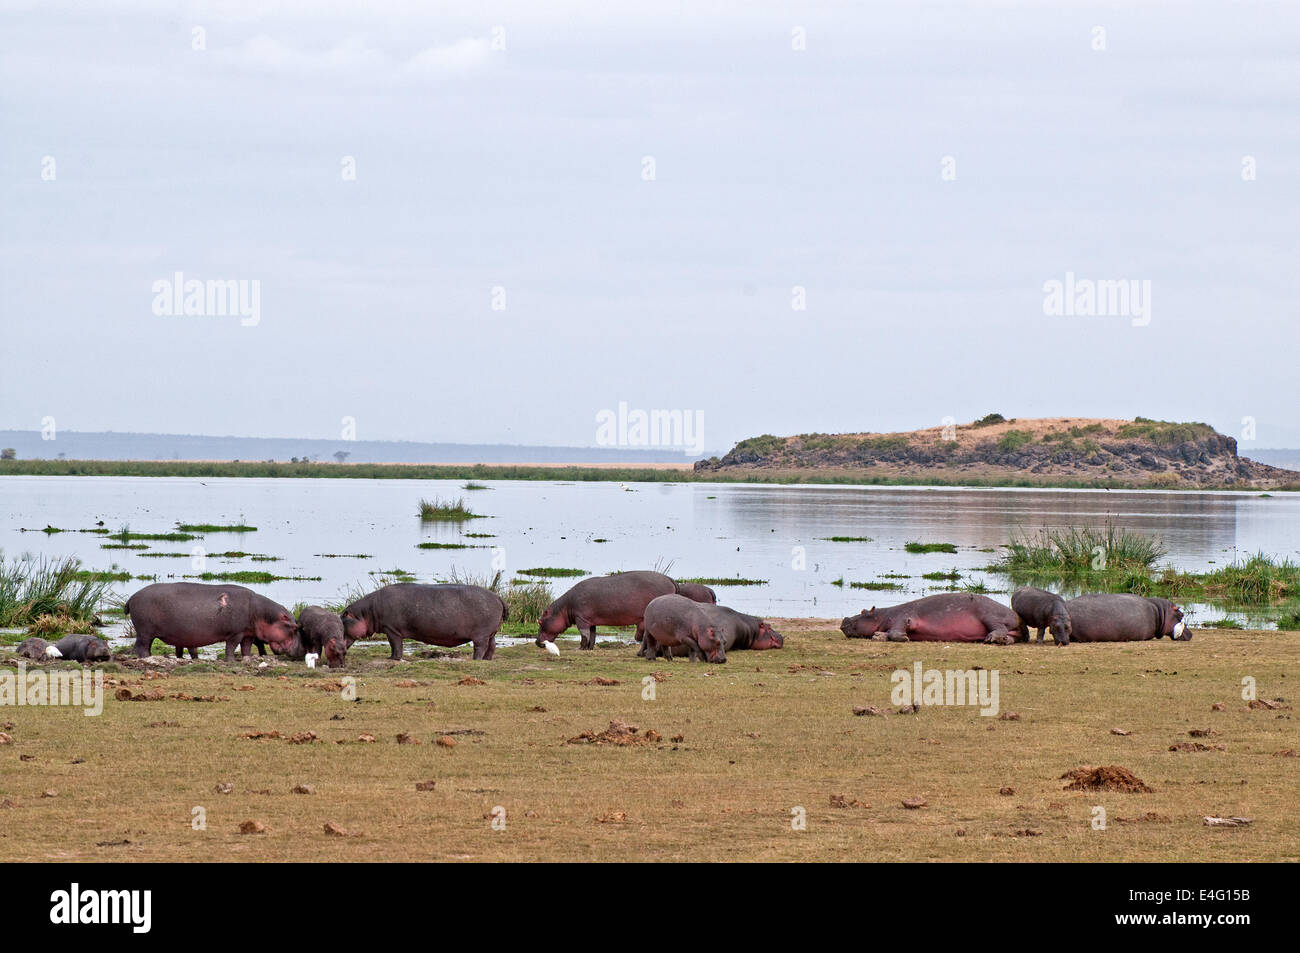 Große Gruppe von Erwachsenen Flusspferde ruhen auf der Sumpf im Amboseli Nationalpark Kenia Ostafrika HIPPO NILPFERDE Nilpferd AMB Stockfoto